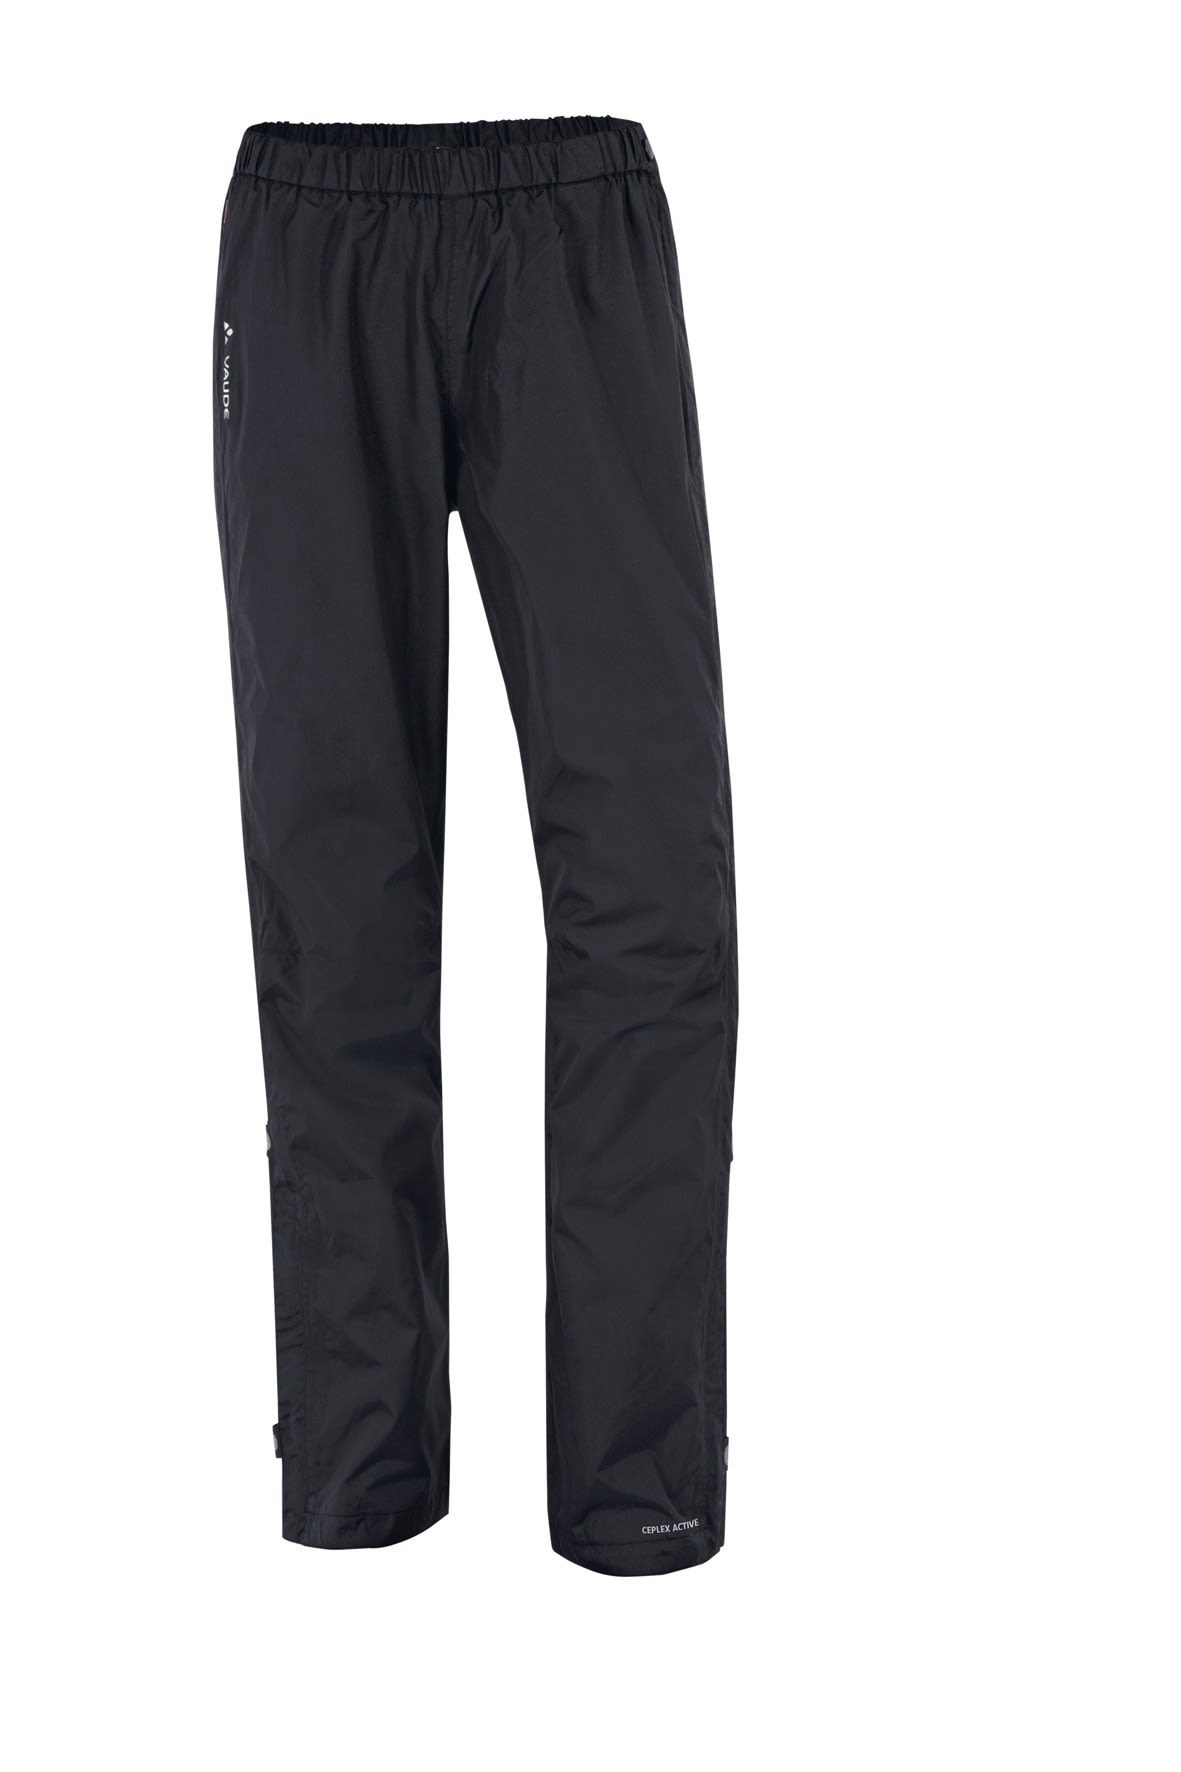 Vaude Fluid Full-Zip Pants Schwarz- Female Hosen- Grsse 44 - Short - Farbe Black